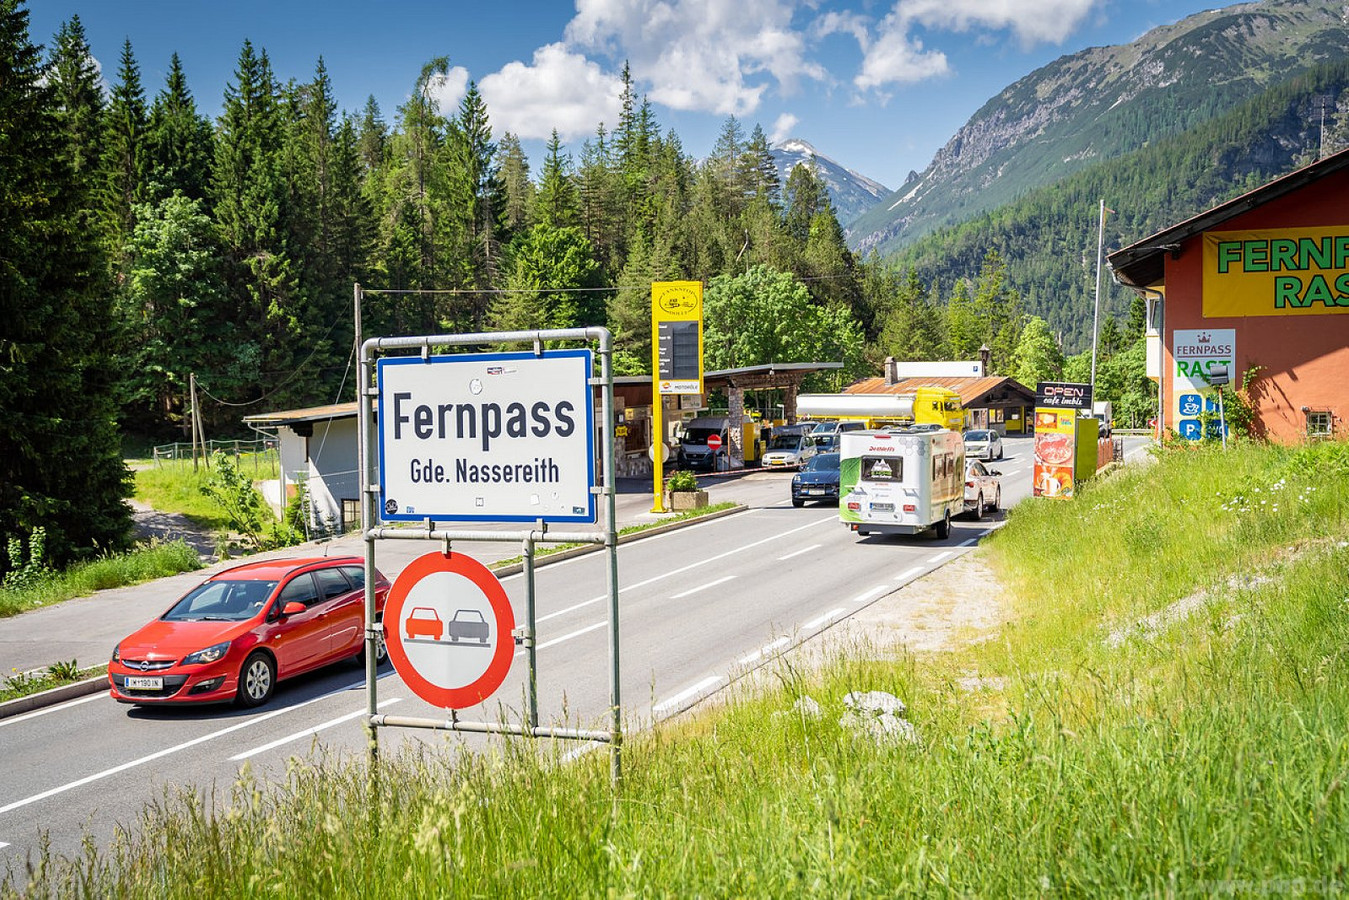 De route leidde onder meer over de Fernpas en de Brennerpas, wat normaal gesproken uitdagend terrein is voor bestuurders van elektrische auto's.